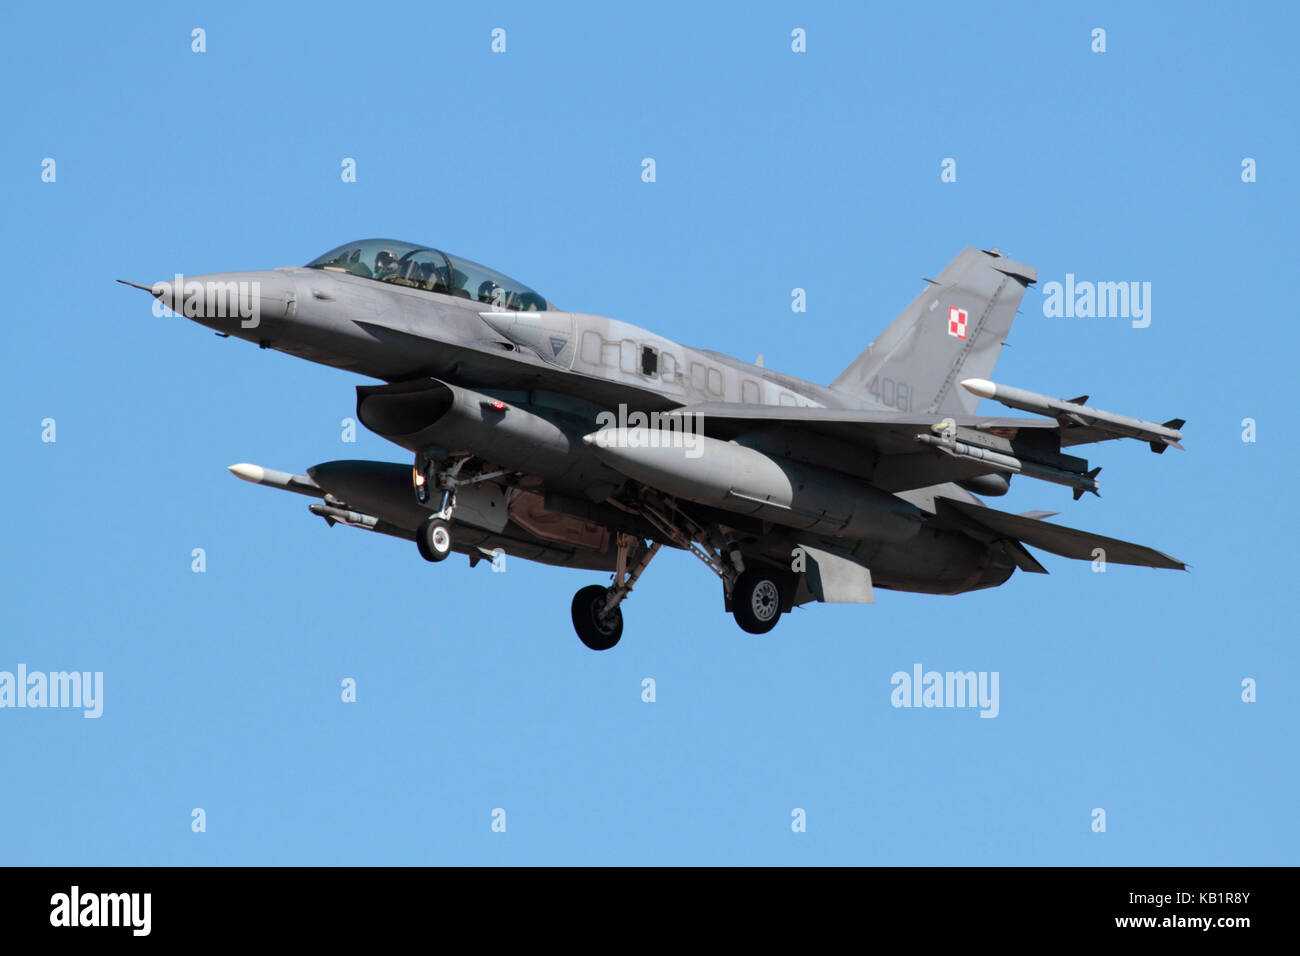 Moderne Militärflugzeuge. Die polnische Luftwaffe F-16D Kampfjet Flugzeug auf dem Weg, mit konformellen Treibstofftanks (CFTs) auf dem Rumpf ausgestattet Stockfoto